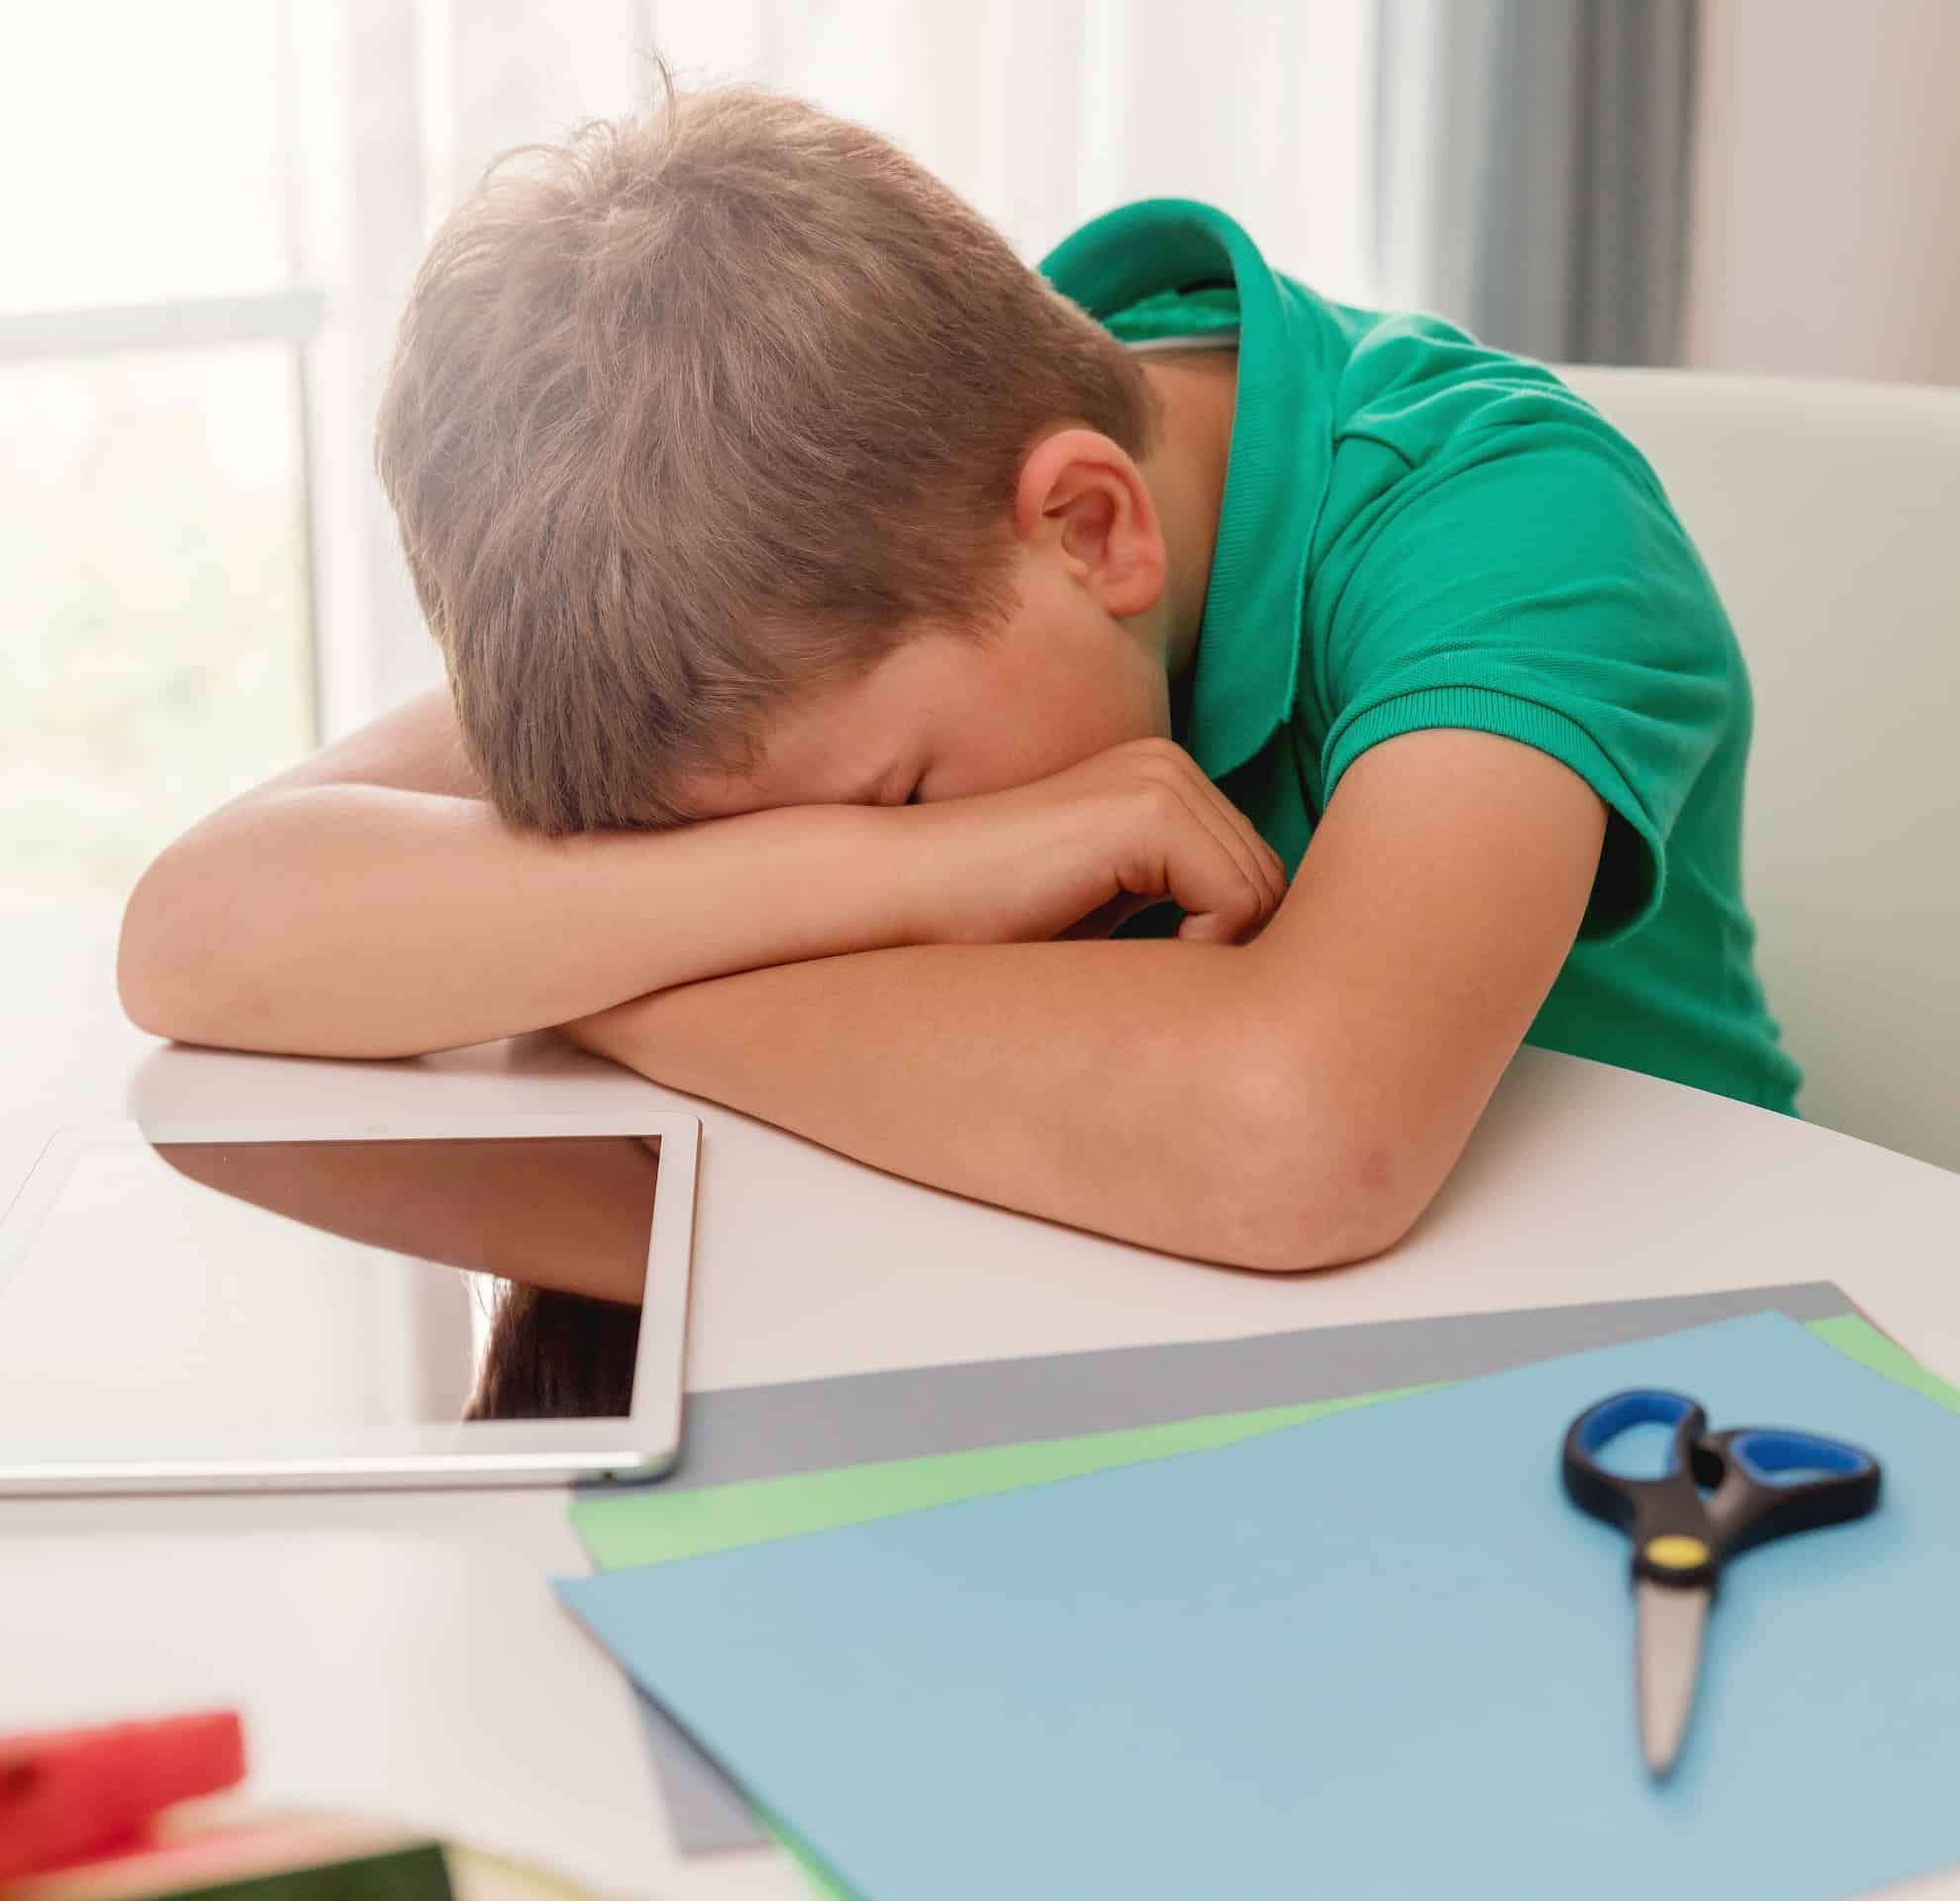 Menino deitado com a cabeça na mesa parece desmotivado, um dos principais sintomas de problema de aprendizagem.